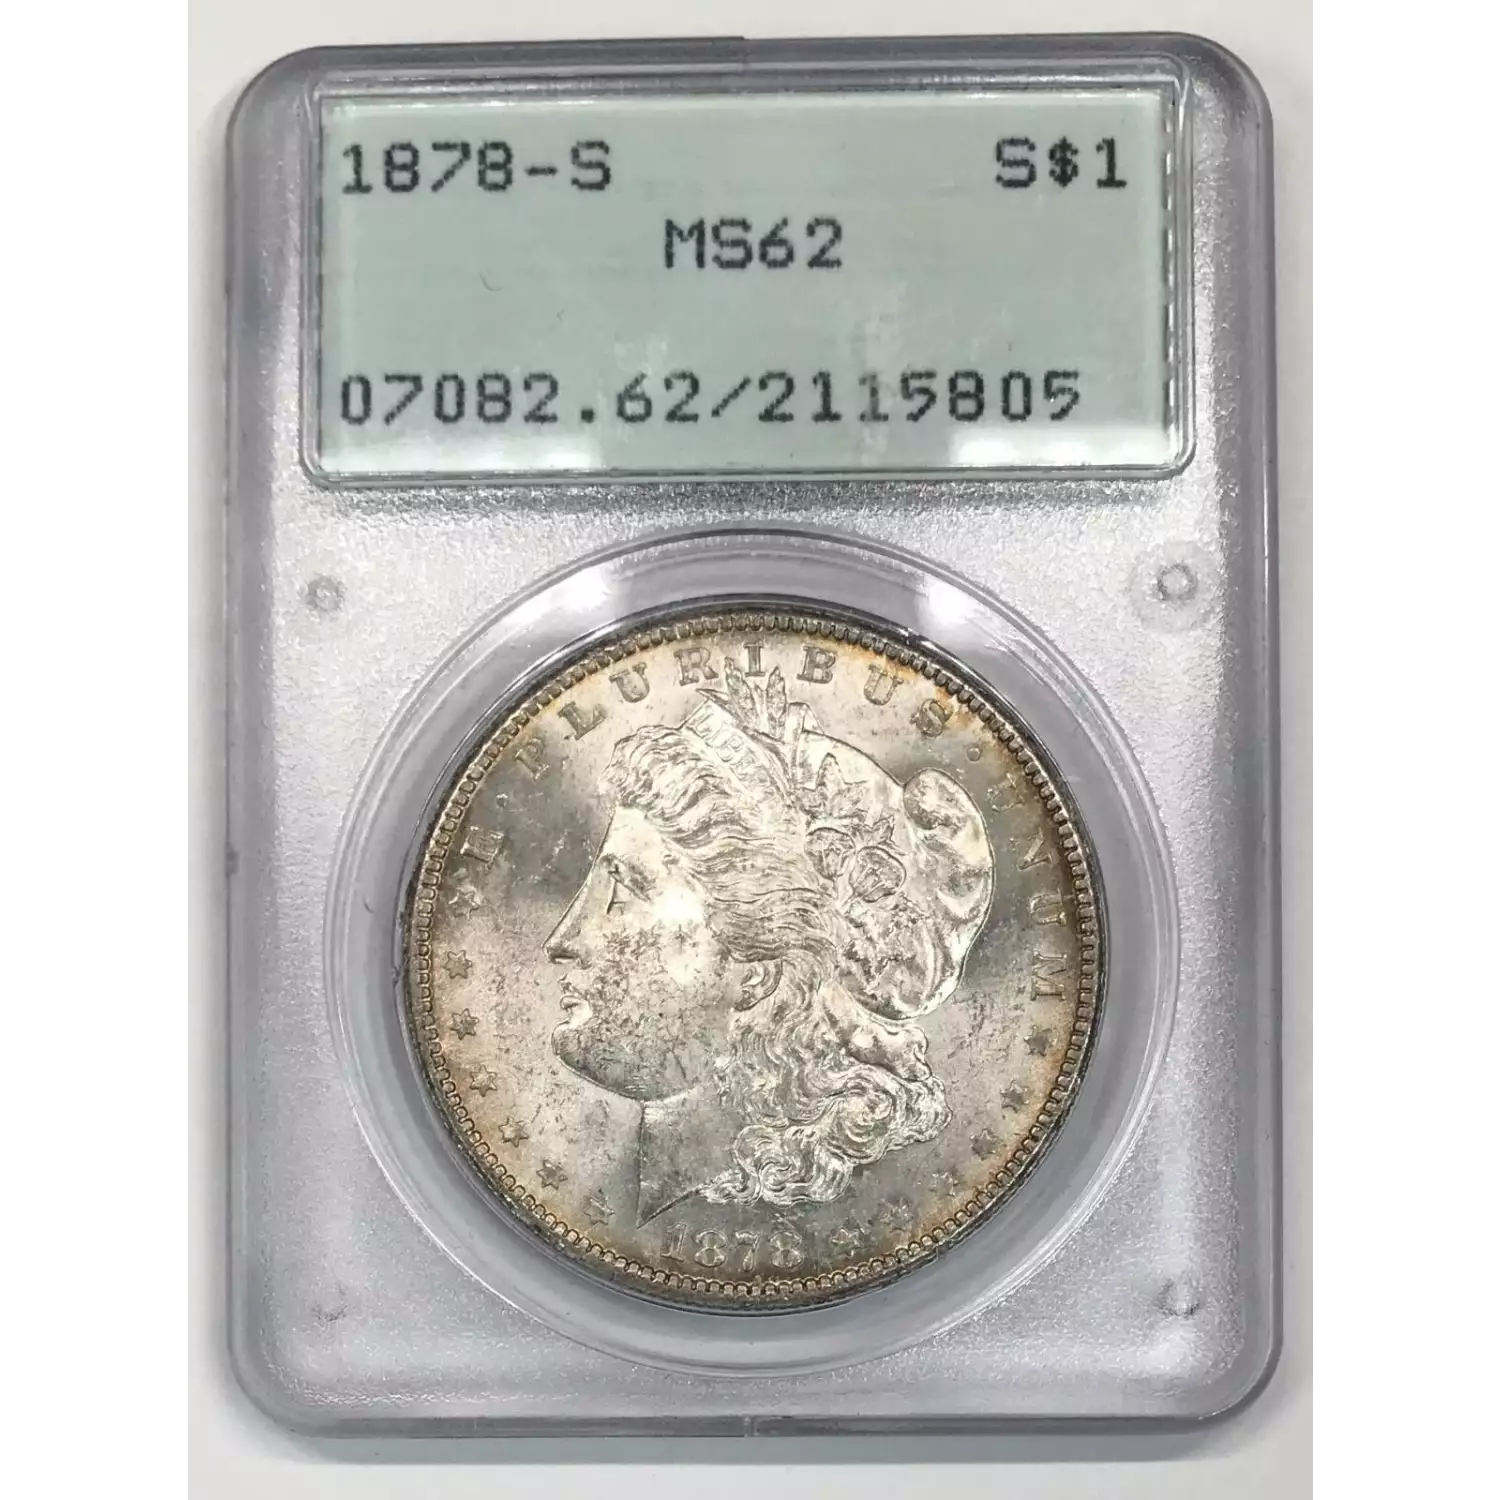 1878-S $1